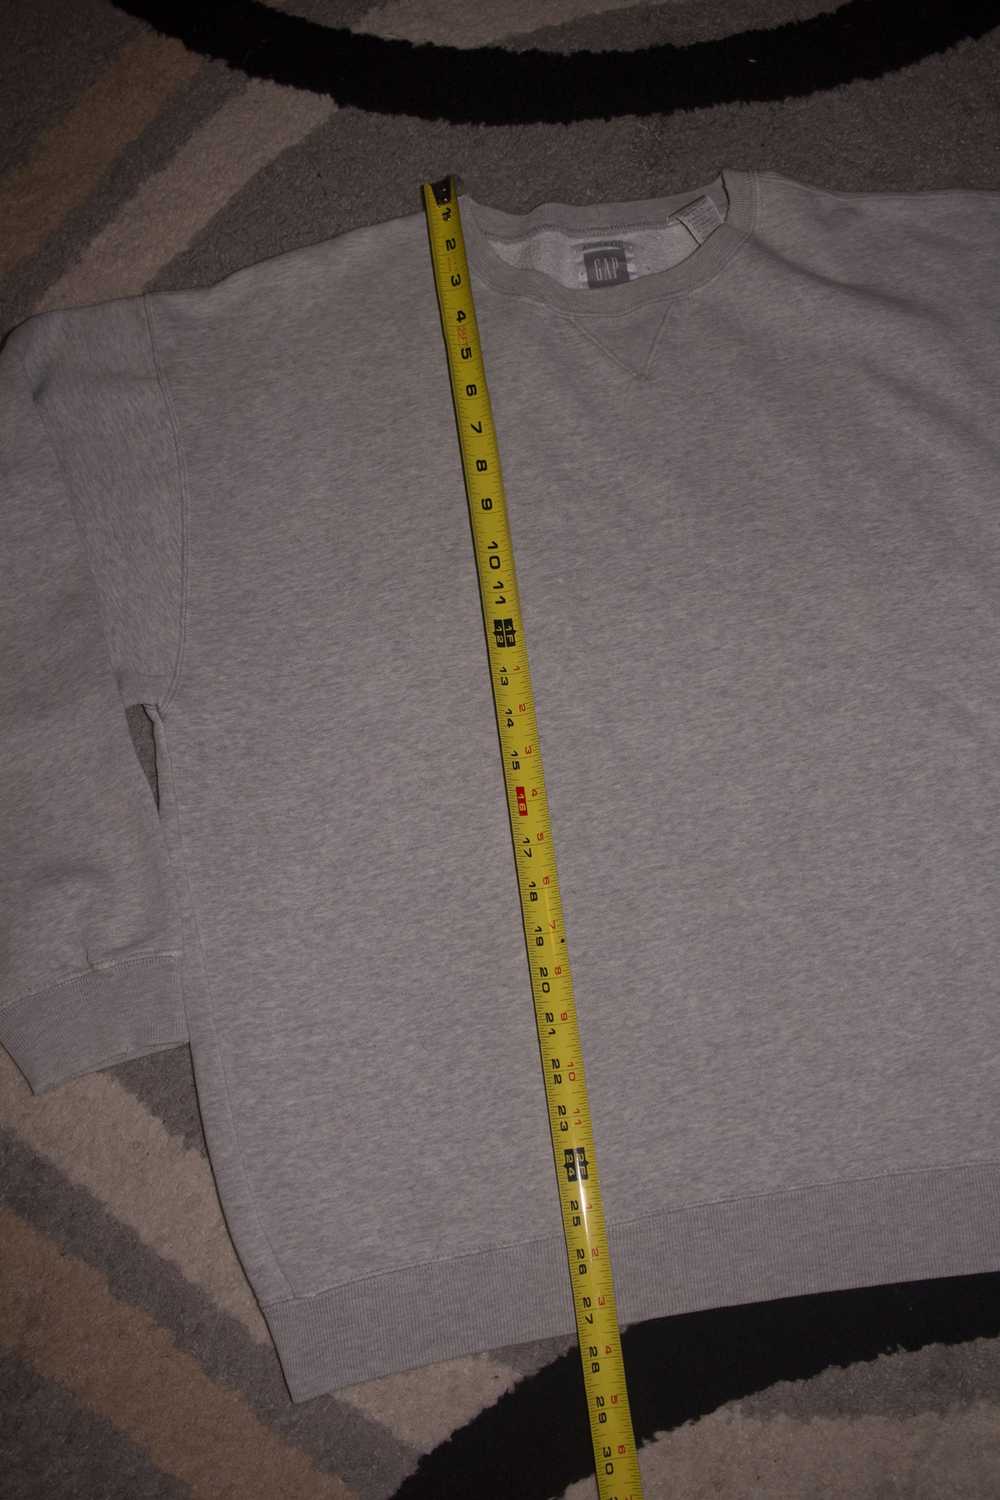 Gap × Vintage 90s Gap Crewneck Sweatshirt (Grey) - image 2